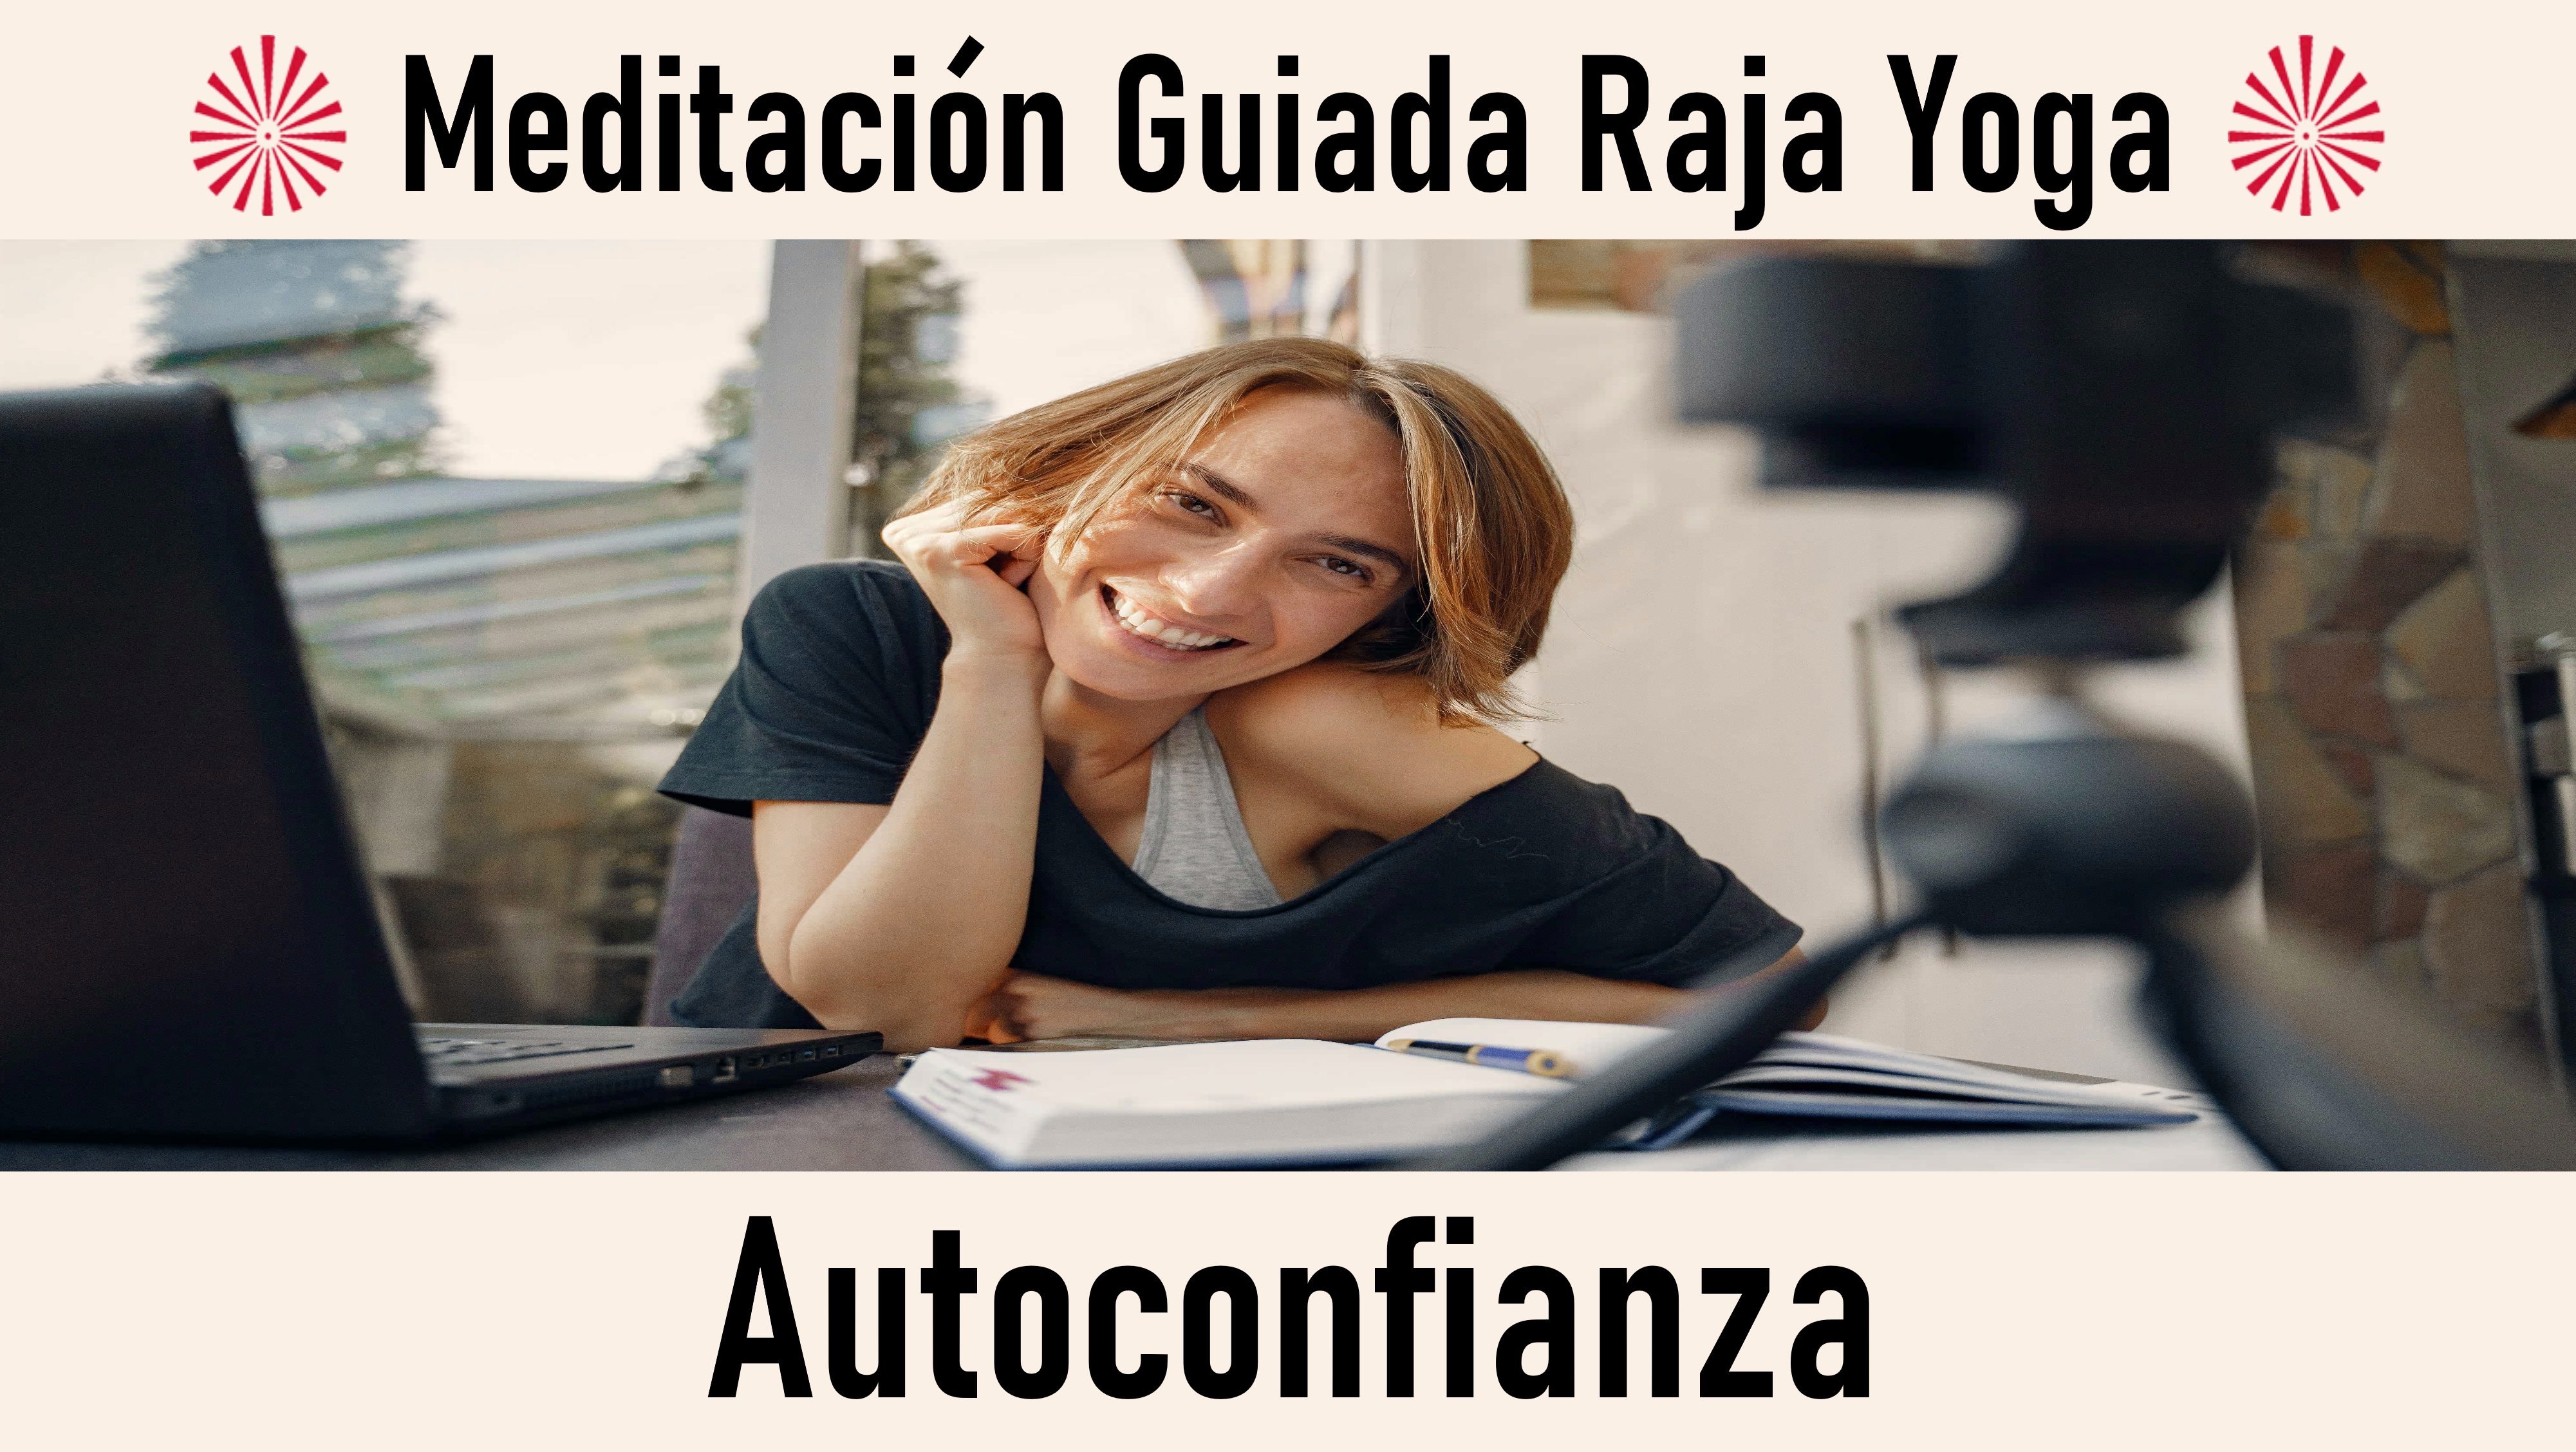 Meditación Raja Yoga : Autoconfianza (30 Septiembre 2020) On-line desde Madrid